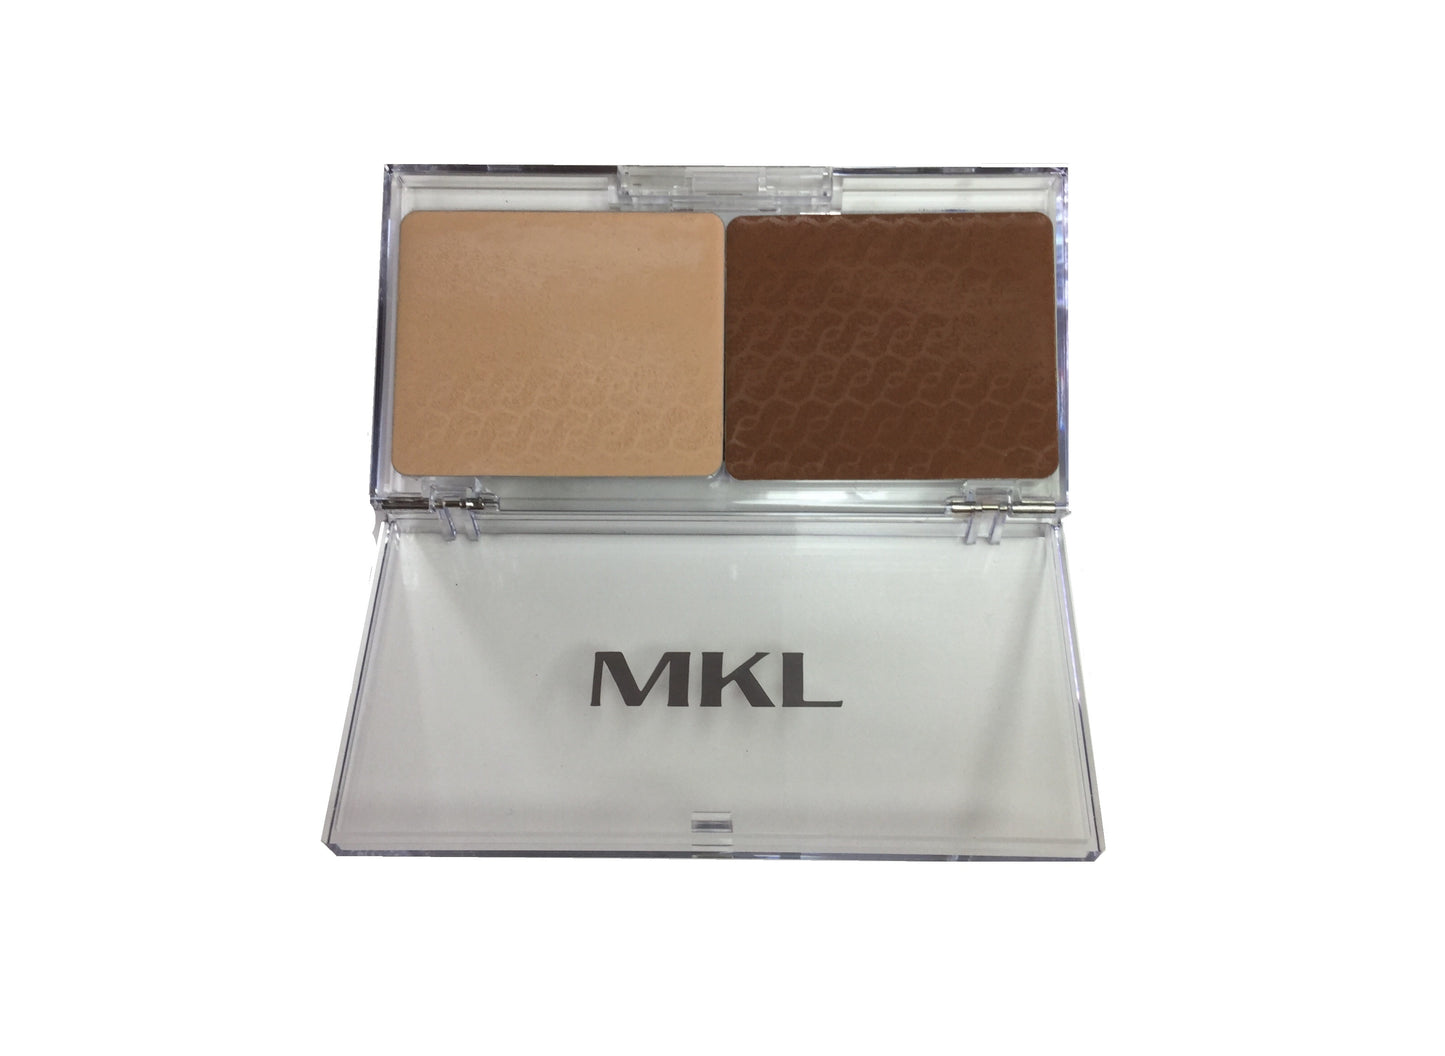 MKL Fondotinta anti-age compatto e cremoso, a base di cere naturali con 1 colore chiaro ed 1 scuro per creare effetto chiaro-scuro